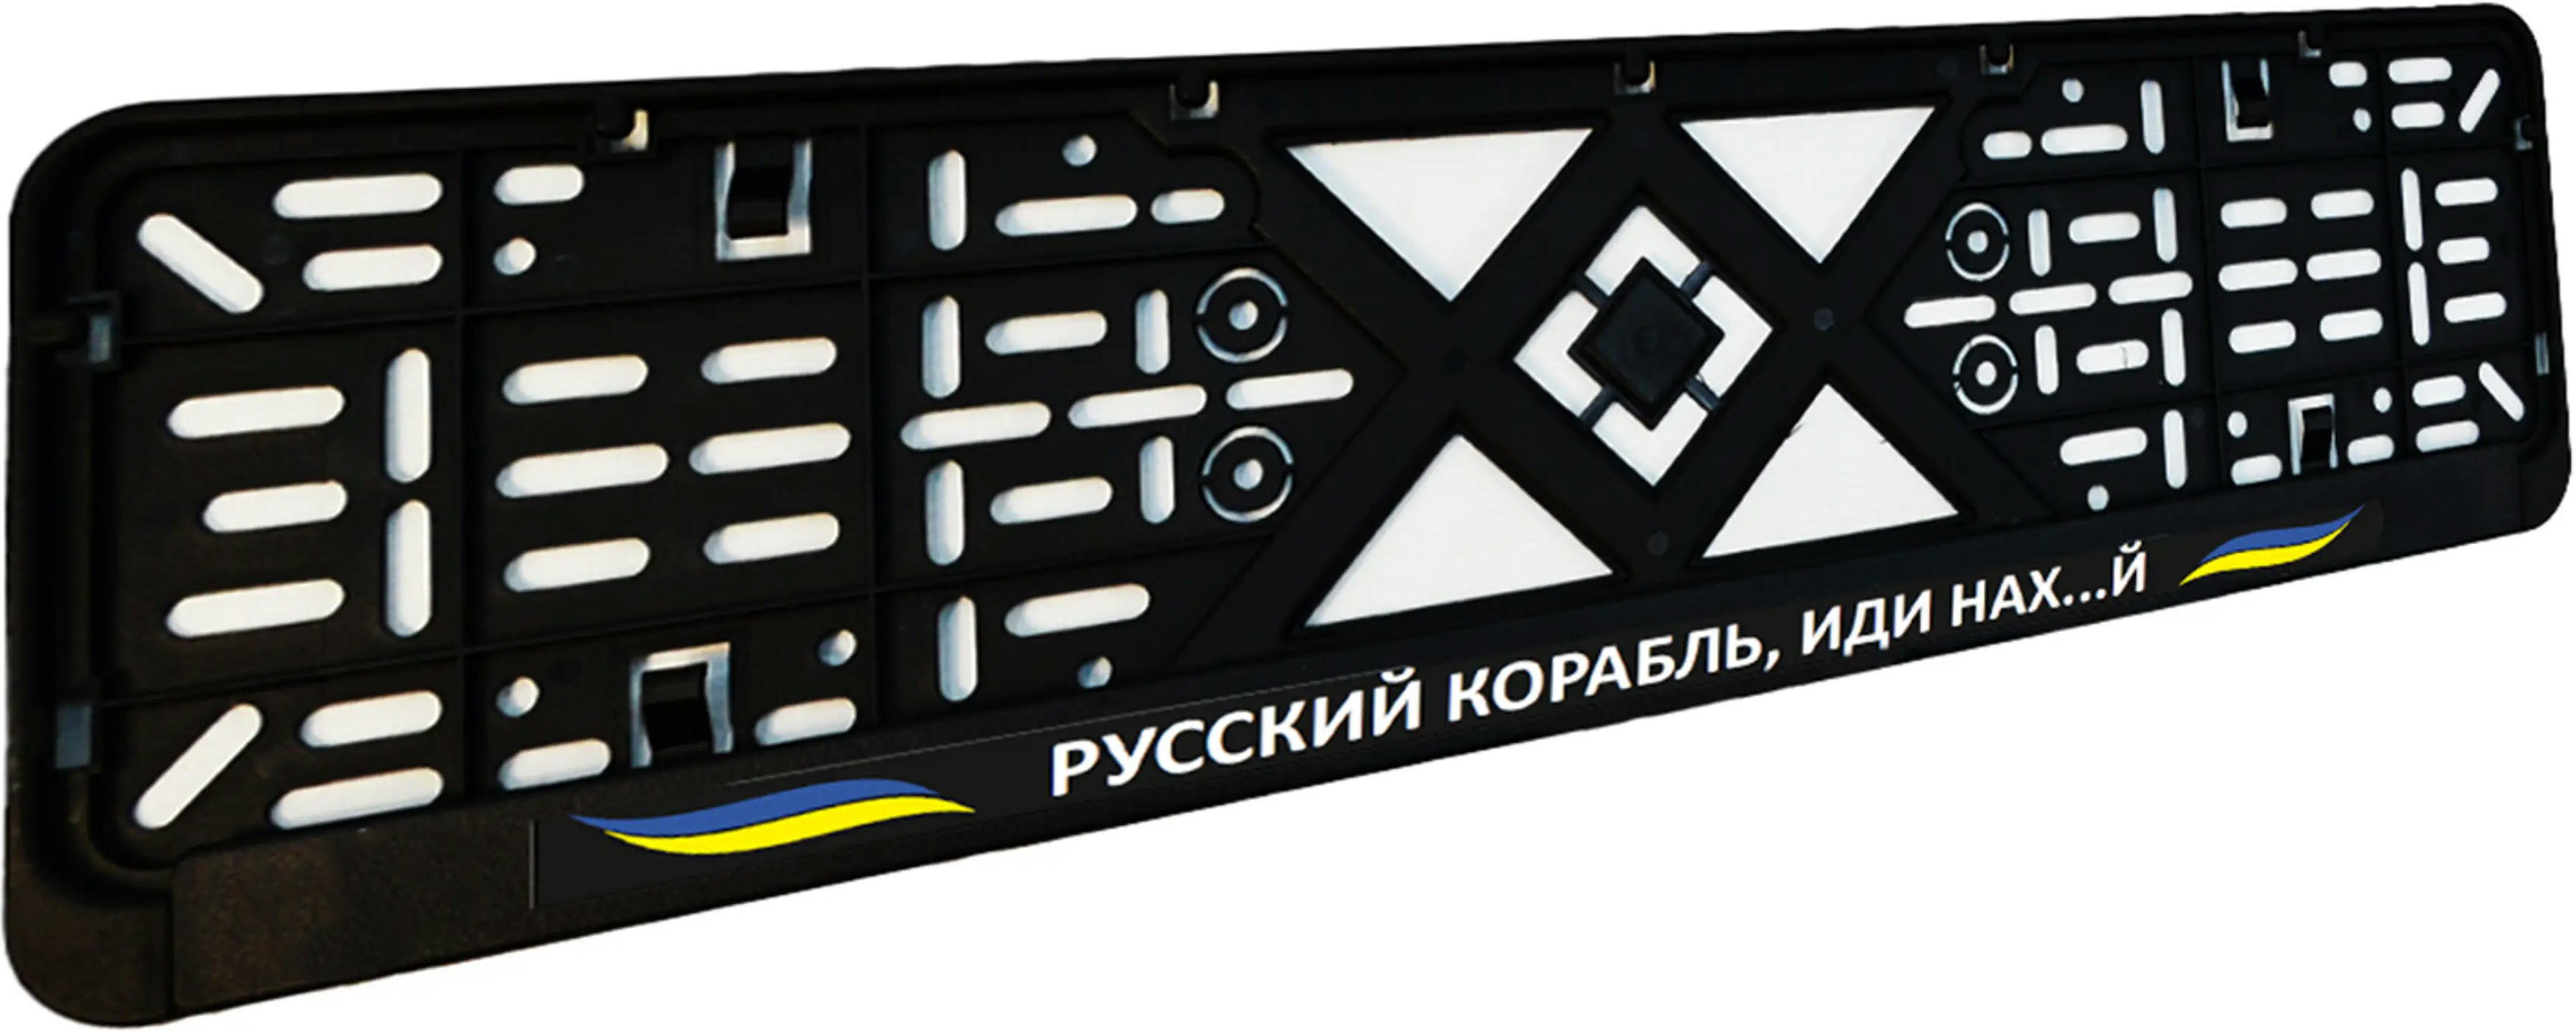 Рамка номерного знака Poputchik пластиковая патриотическая Русский корабль, иди нах…й (24-273-IS) фото 3